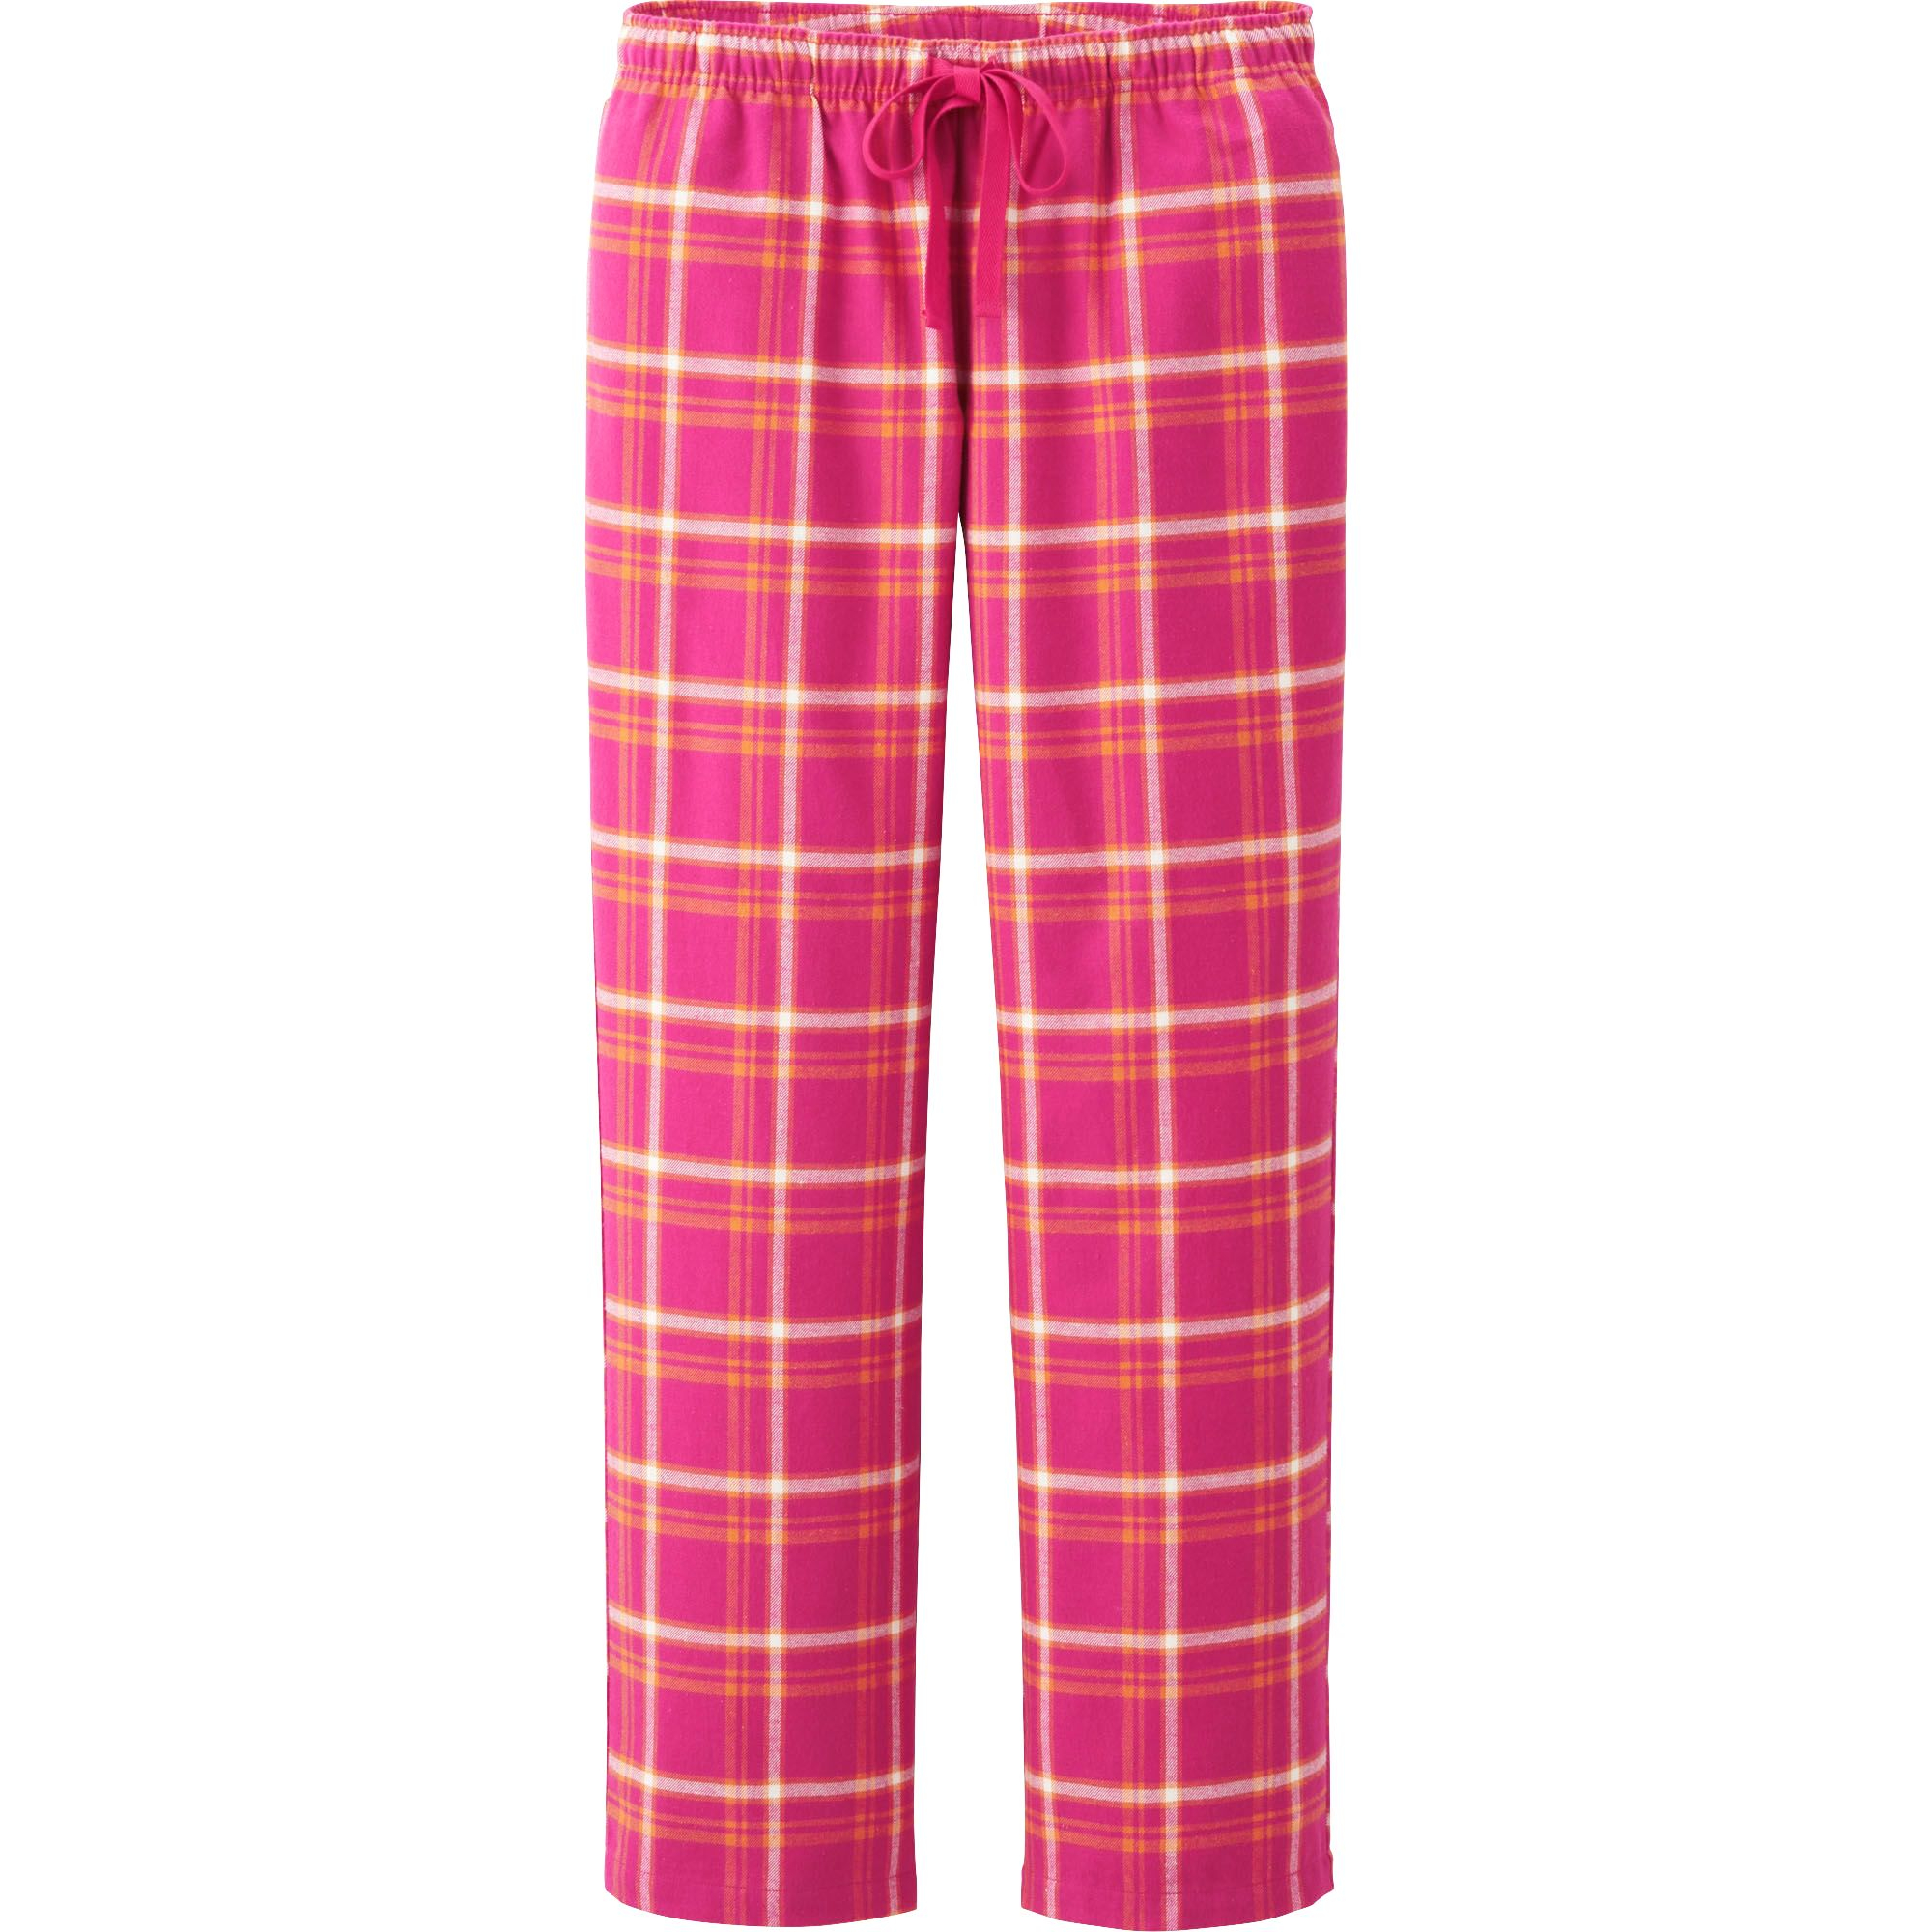 Uniqlo Women Flannel Lounge Pants in Pink | Lyst